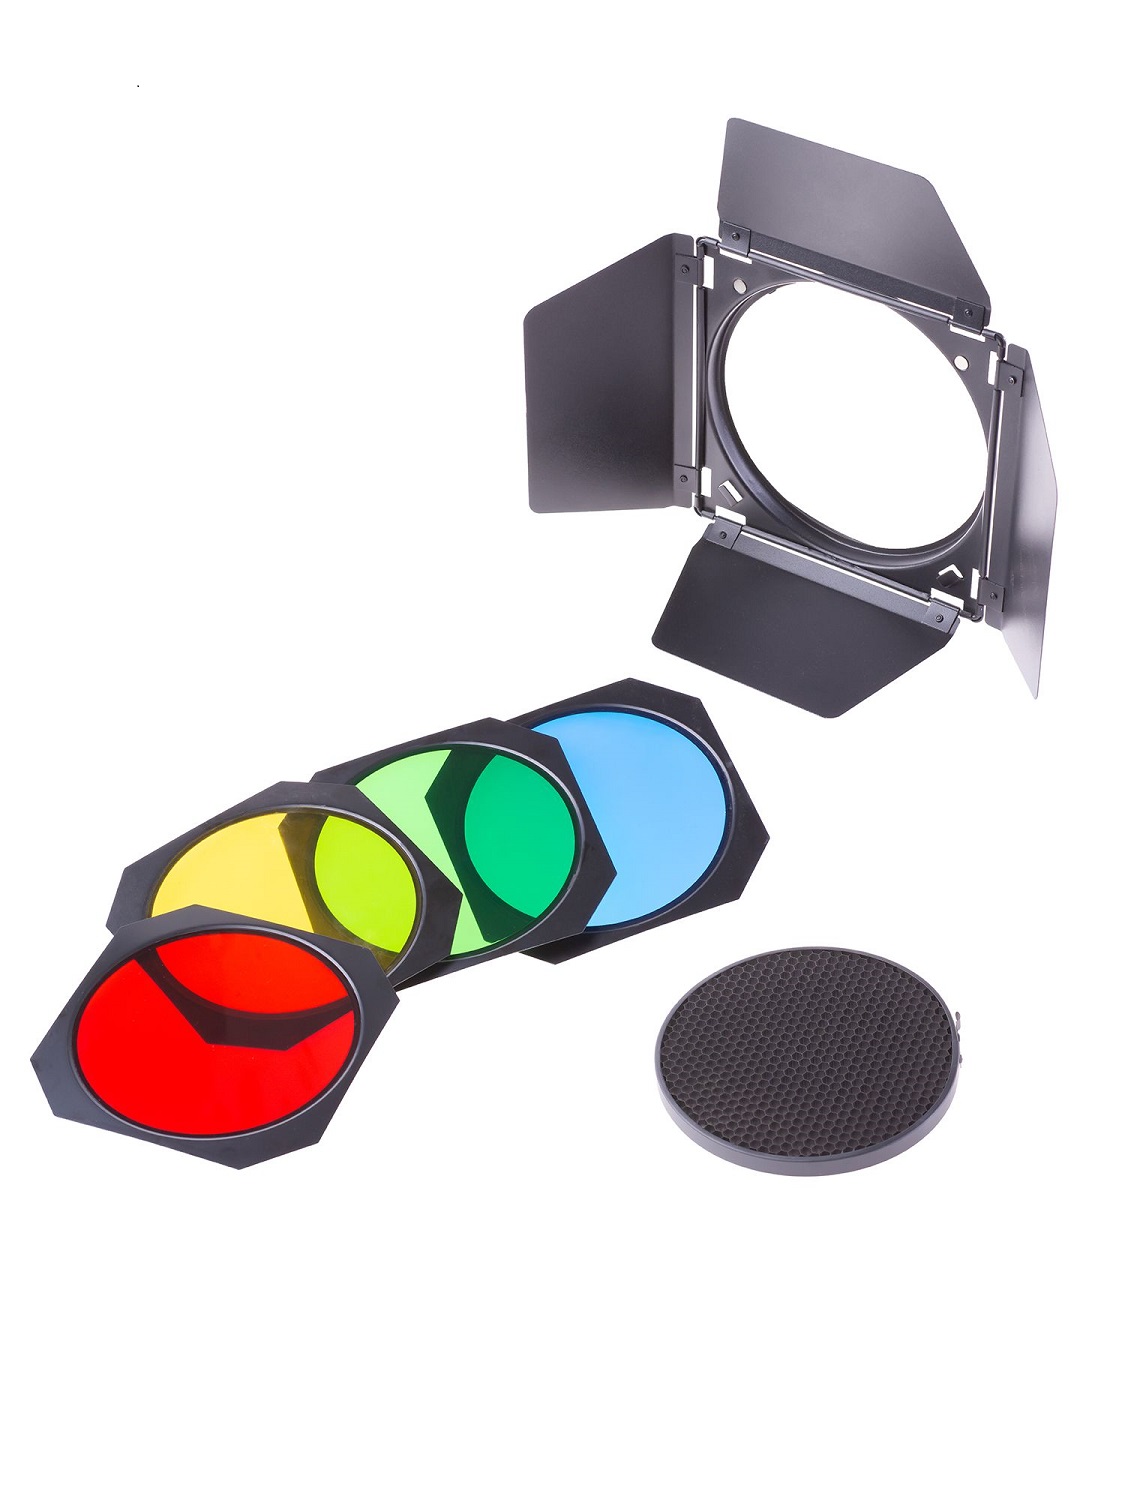 Шторки Raylab RL-FA011 с цветными фильтрами шторки fst bd 300 с сотами и цветными фильтрами